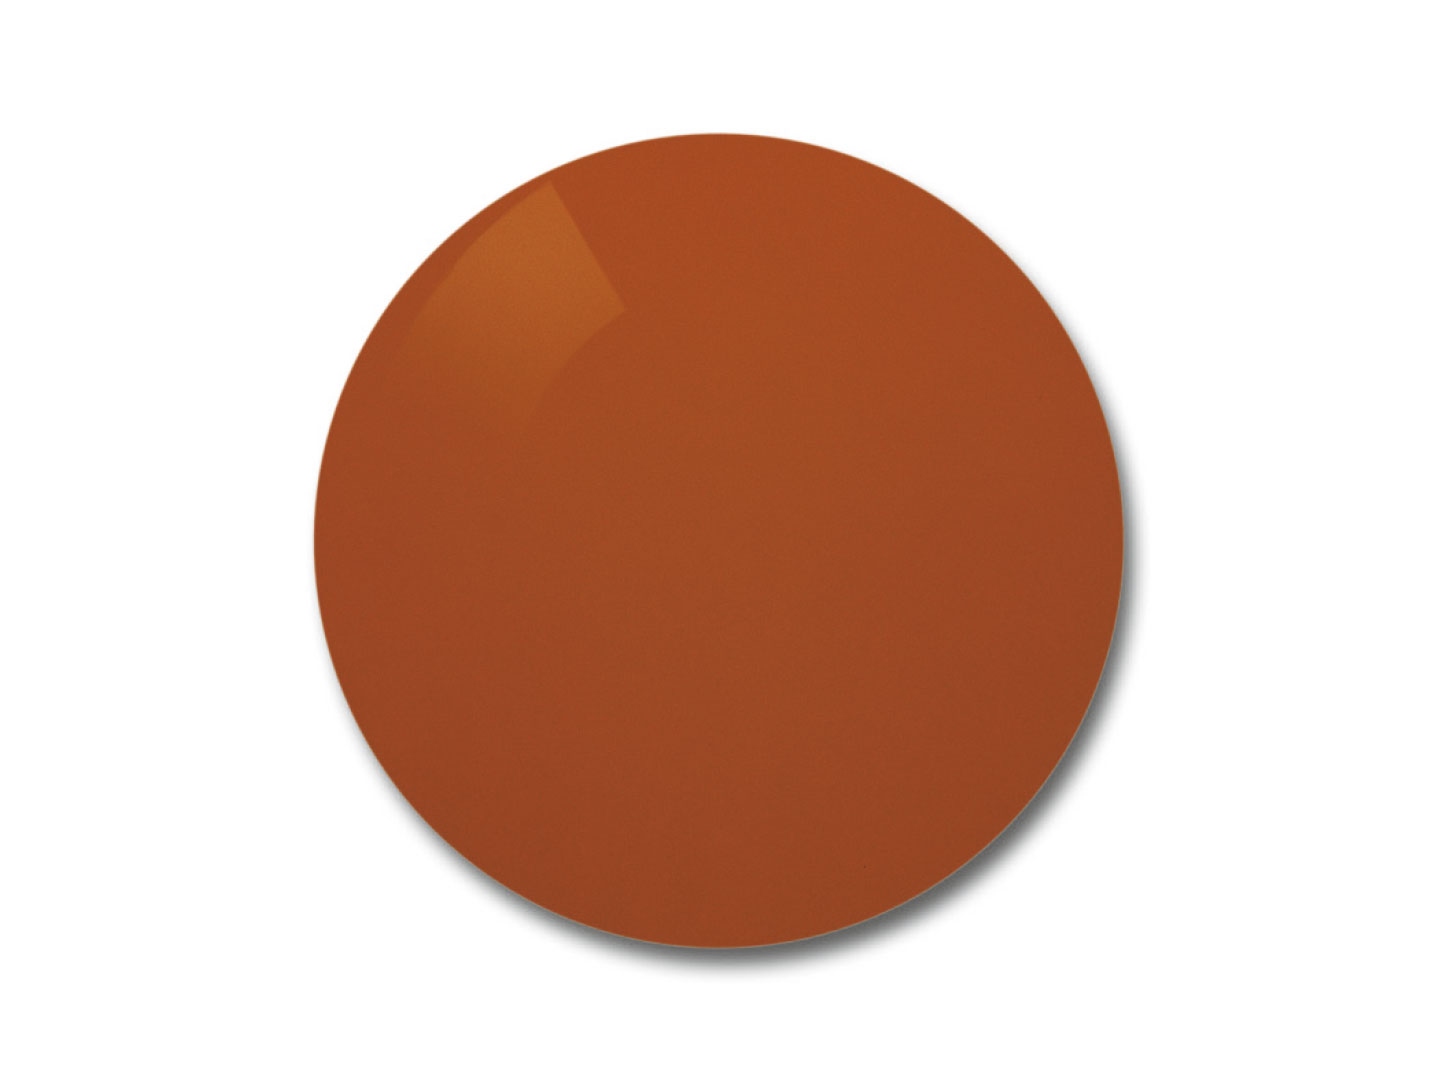 Ilustrație a lentilelor ZEISS Skylet® Fun cu nuanță maro-portocalie